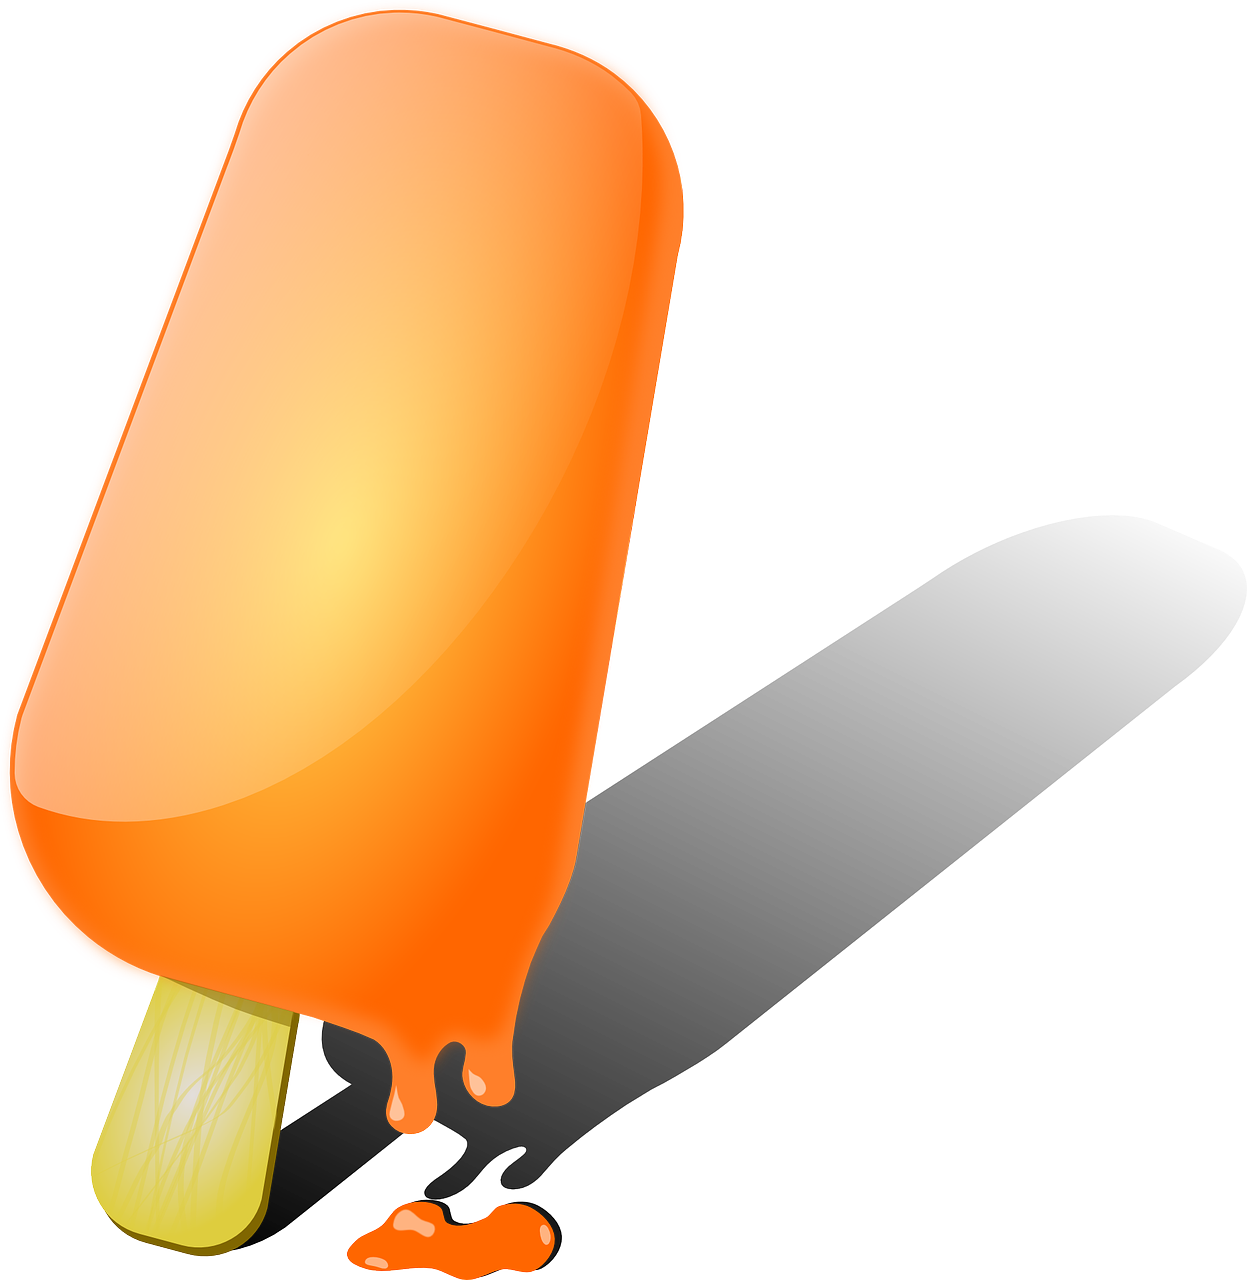 popsicle ice cream orange free photo